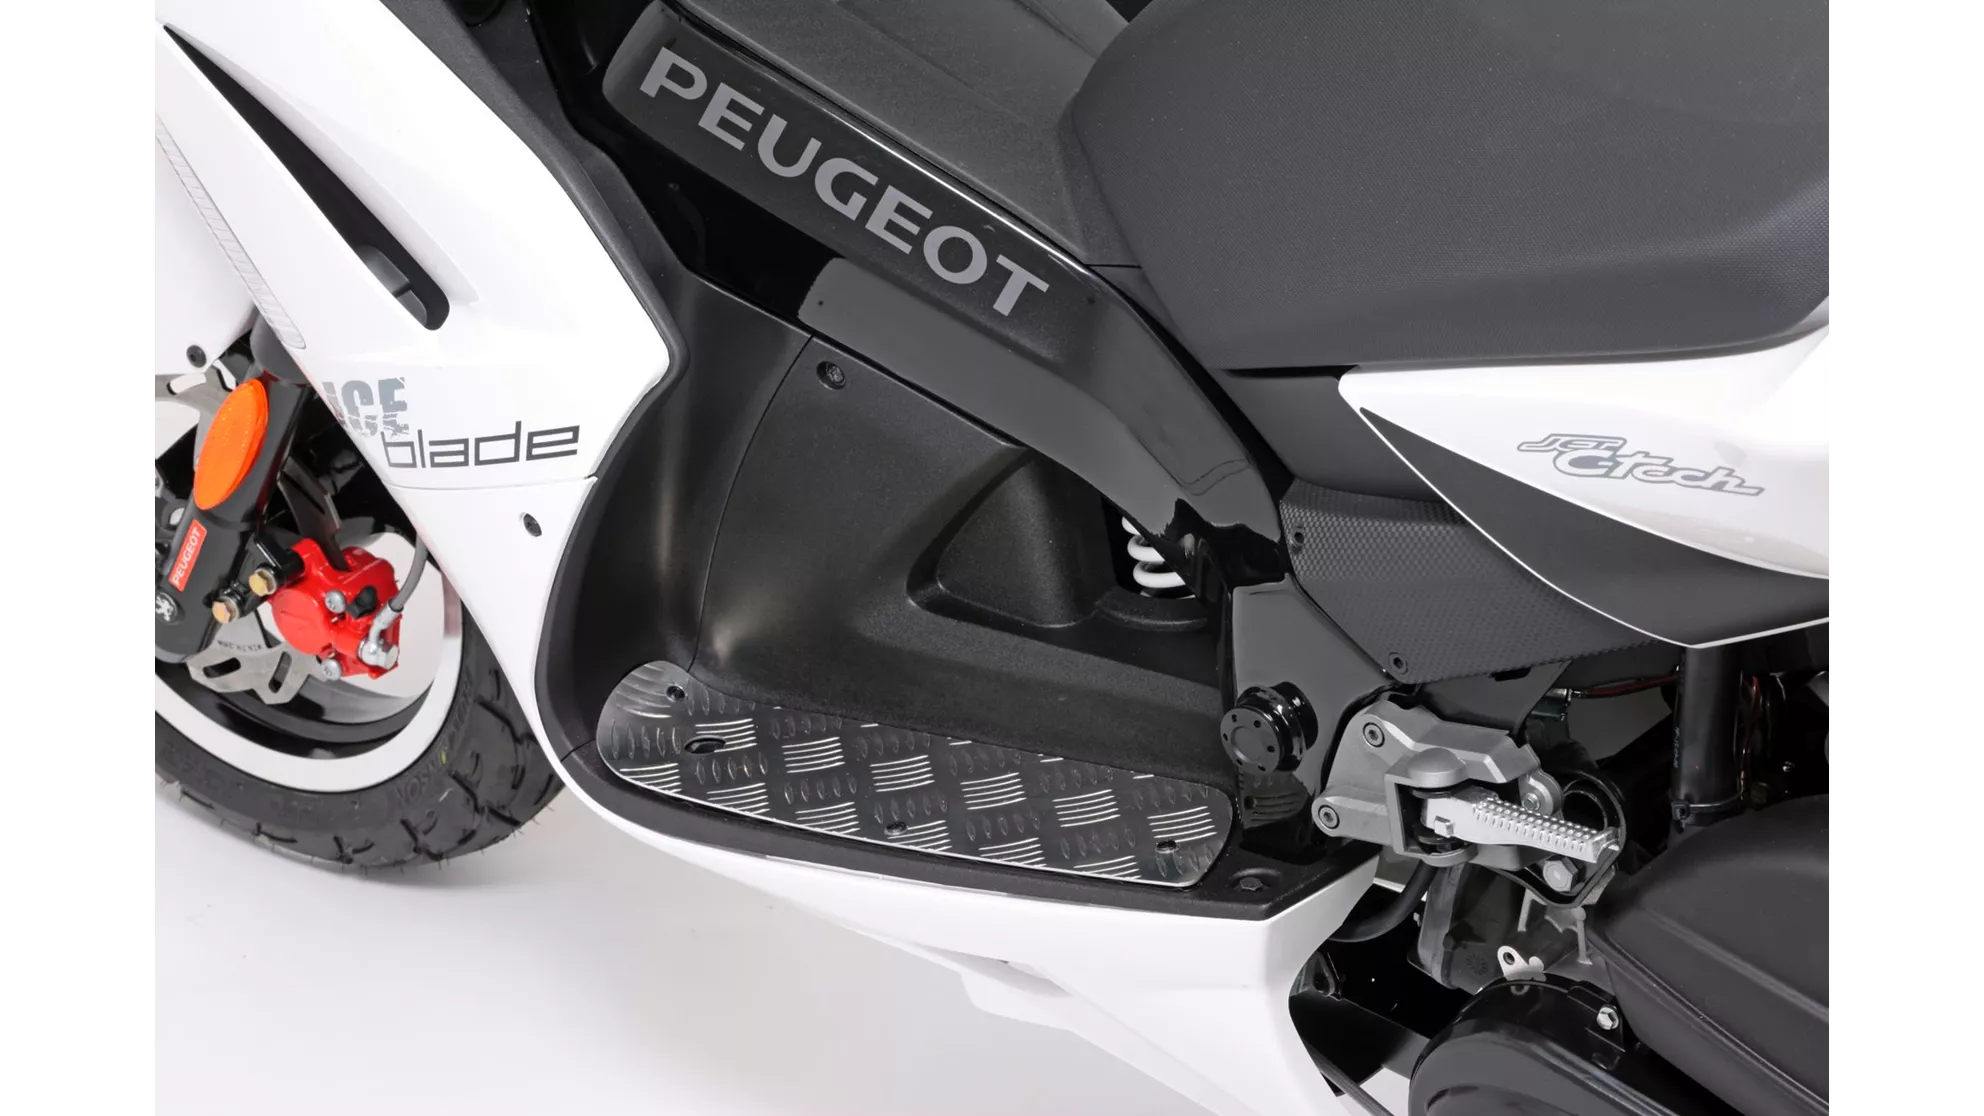 Peugeot Jet Force 50 Iceblade - Resim 1